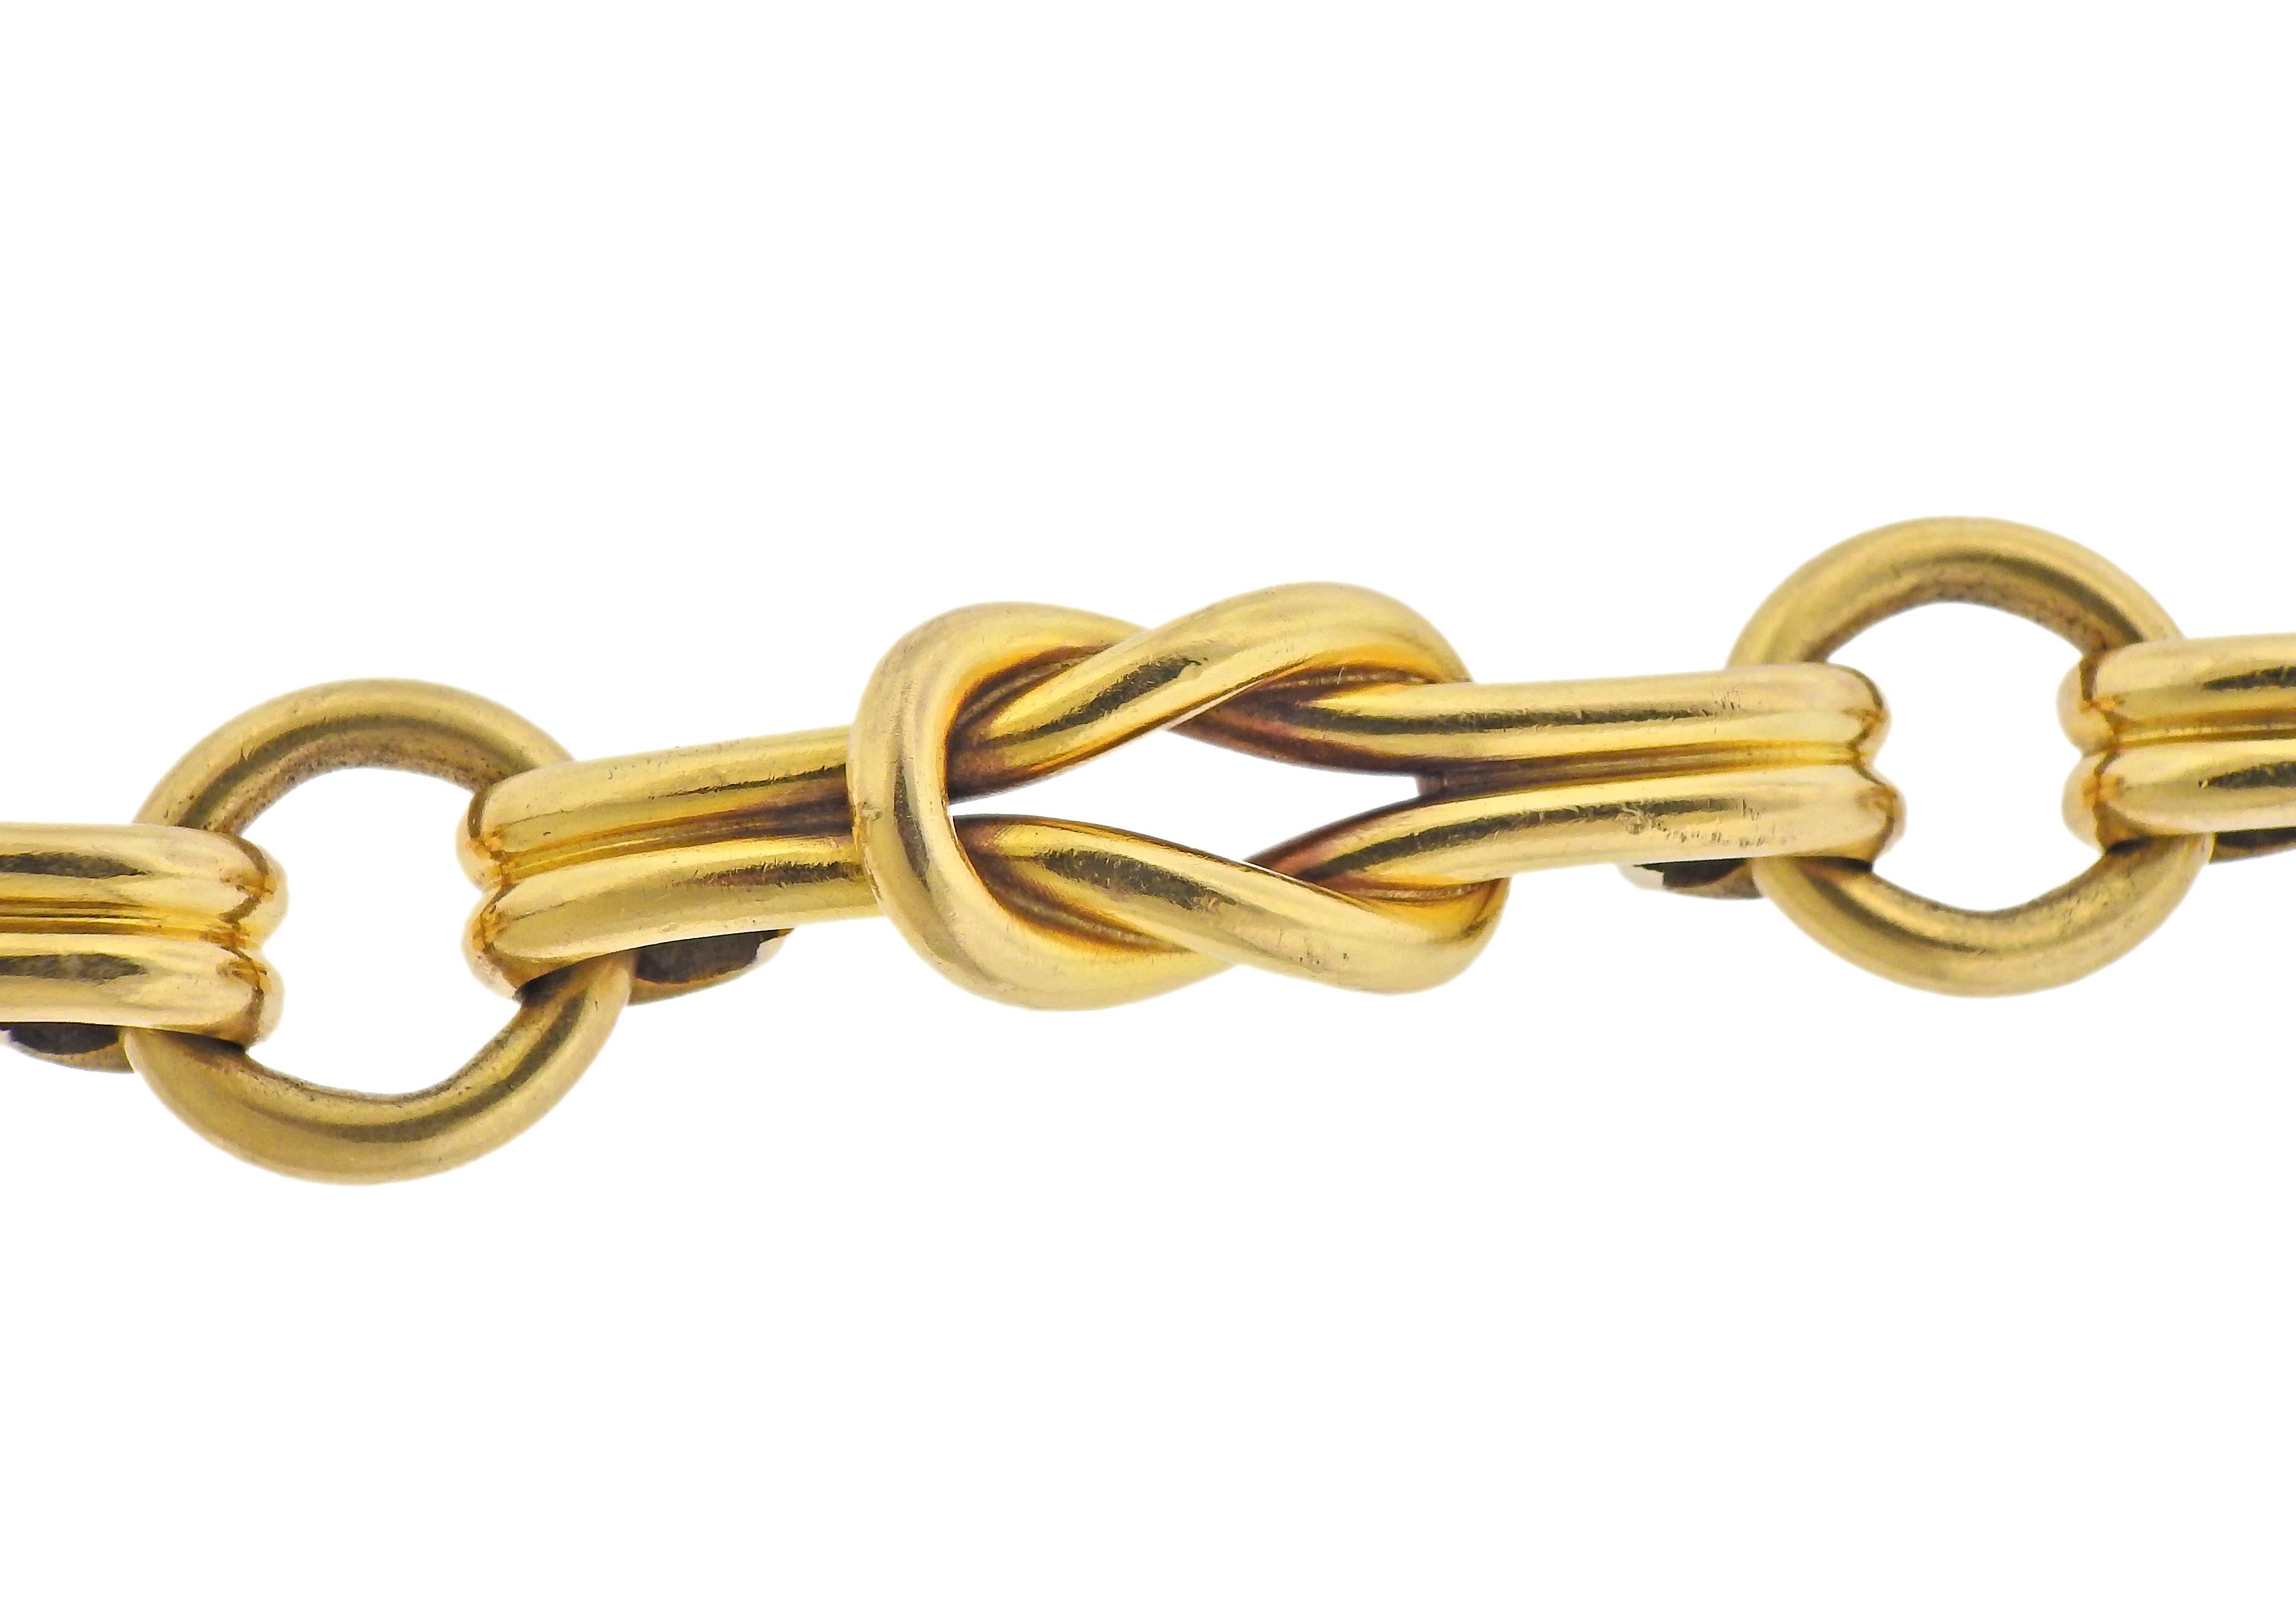 1980s vintage 18k gold Gucci bracelet, featuring Hercules knot design. Bracelet is 8